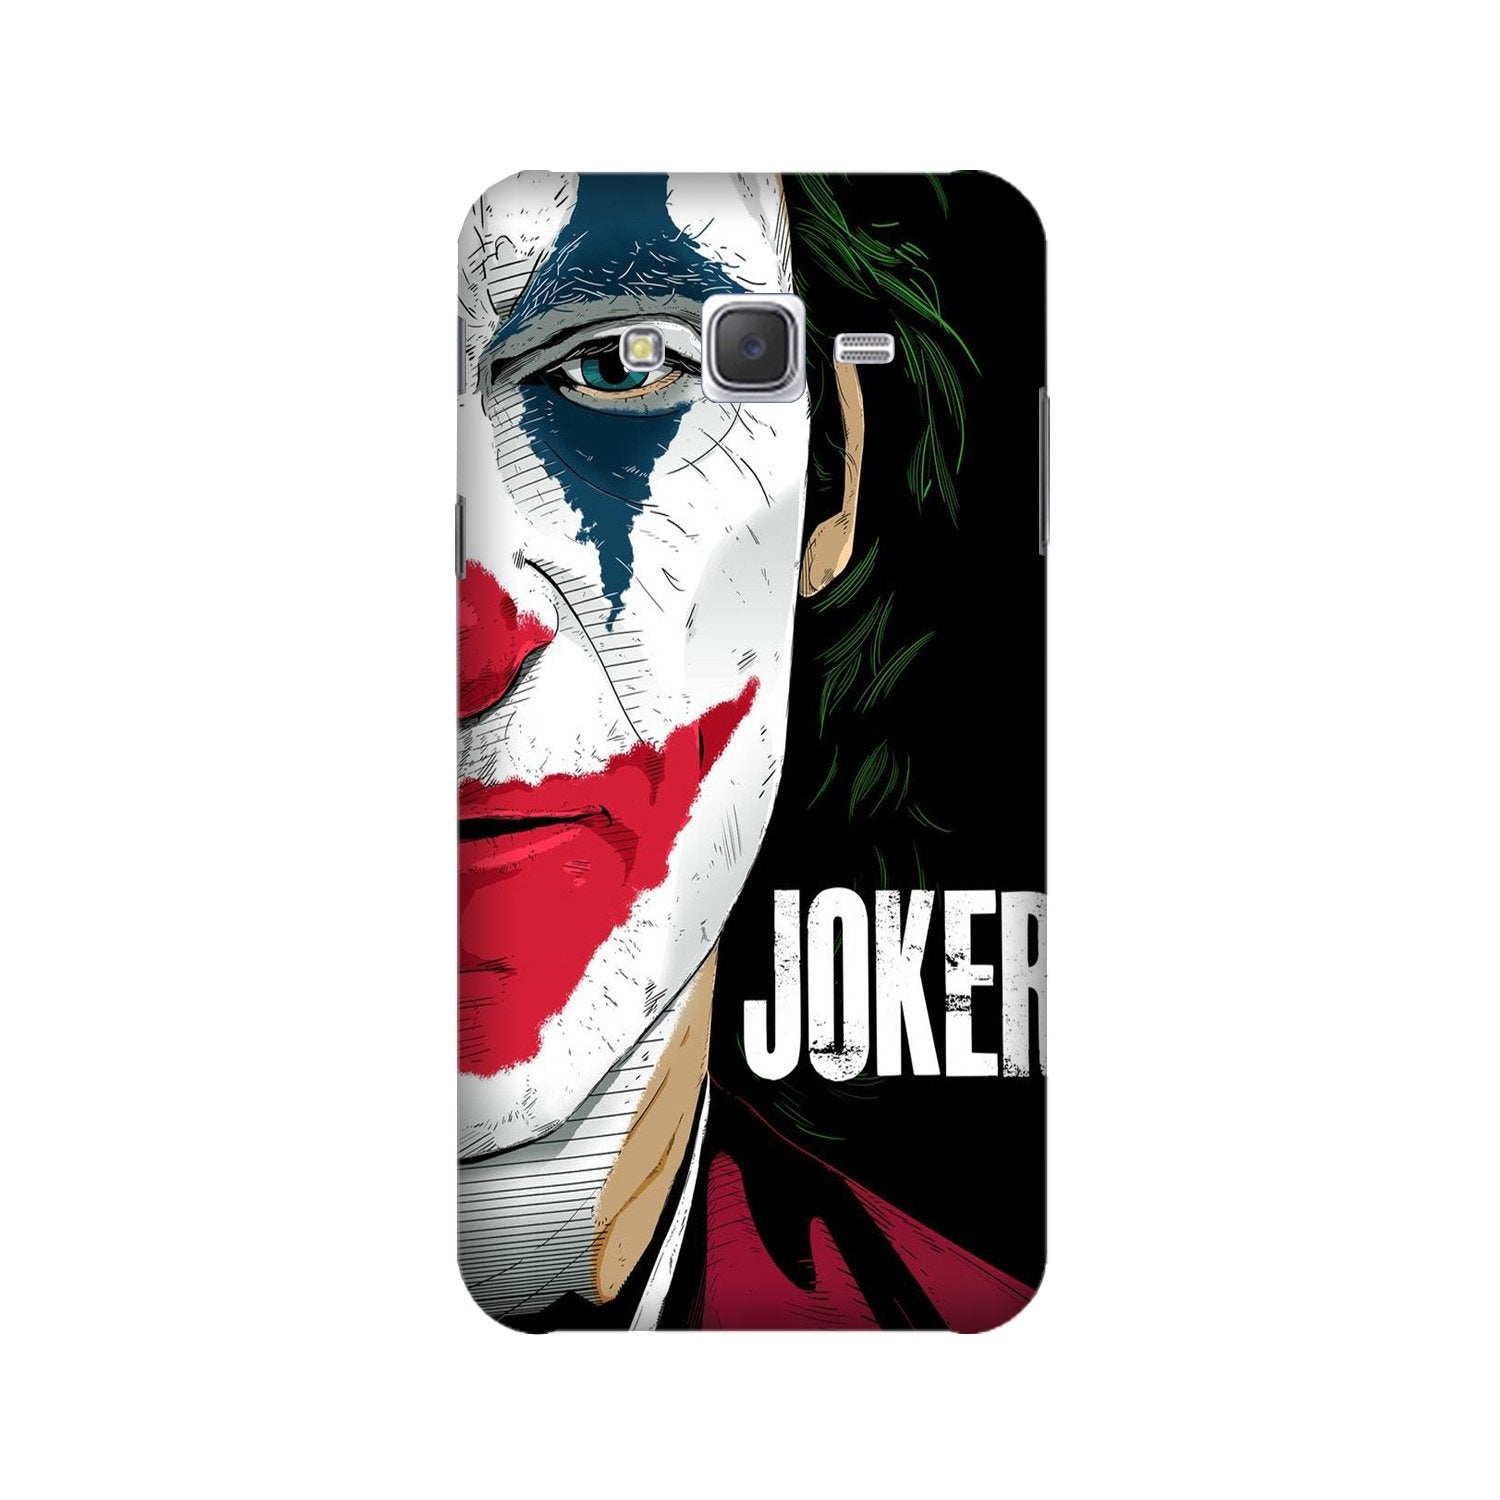 Joker Mobile Back Case for Galaxy J5 (2016) (Design - 301)